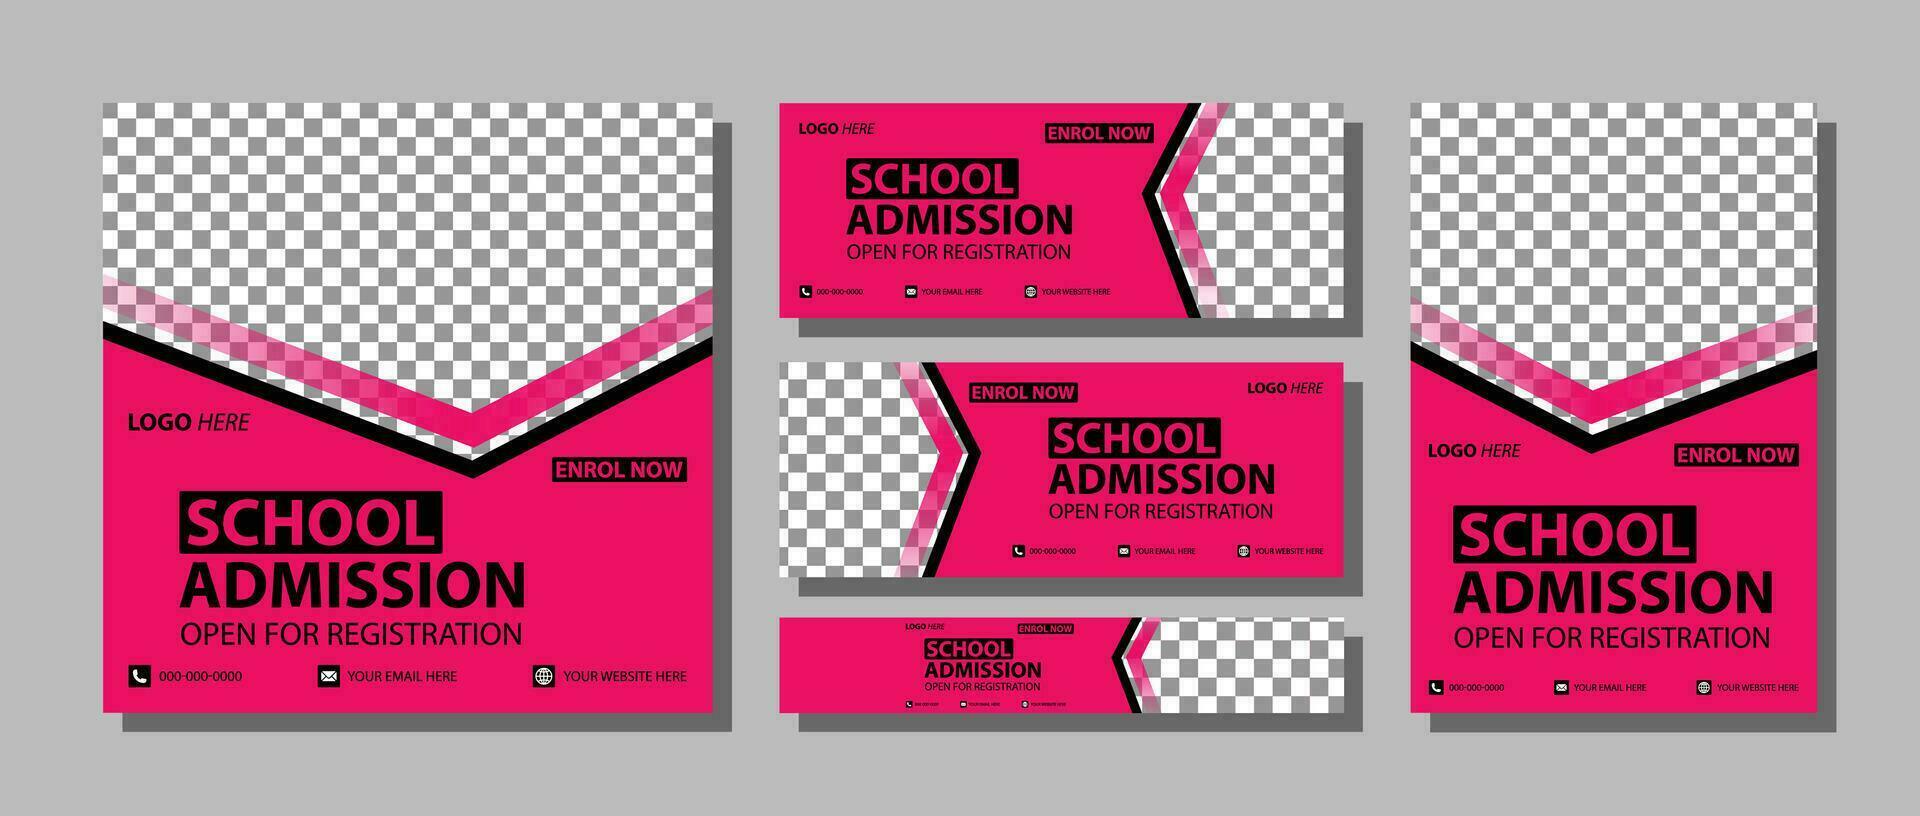 Schule Bildung Sozial Medien Startseite Seite Layout und Kinder Schule Eintritt Netz Banner Vorlage Design einstellen minimal und modern vektor